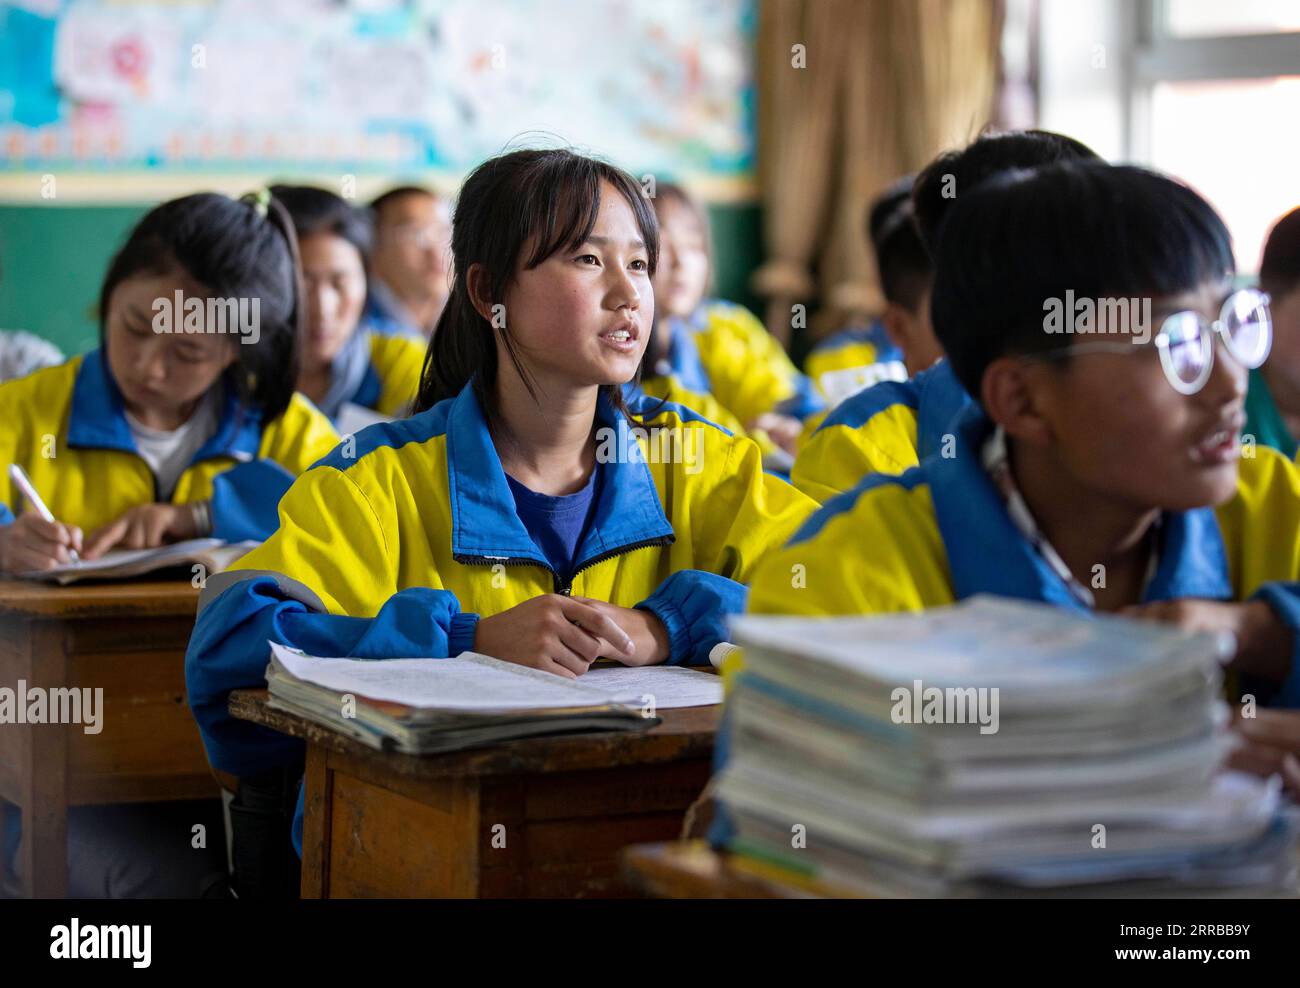 210912 -- YINCHUAN, 12 settembre 2021 -- gli studenti studiano alla Tongxin No. 3 Middle School a Yuwang Township della contea di Tongxin, regione autonoma Ningxia Hui della Cina nord-occidentale, 21 giugno 2021. Titoli Xinhua: Povertà, abbandono nel diario delle ragazze rurali diventa una cosa del passato YangxZhisen PUBLICATIONxNOTxINxCHN Foto Stock